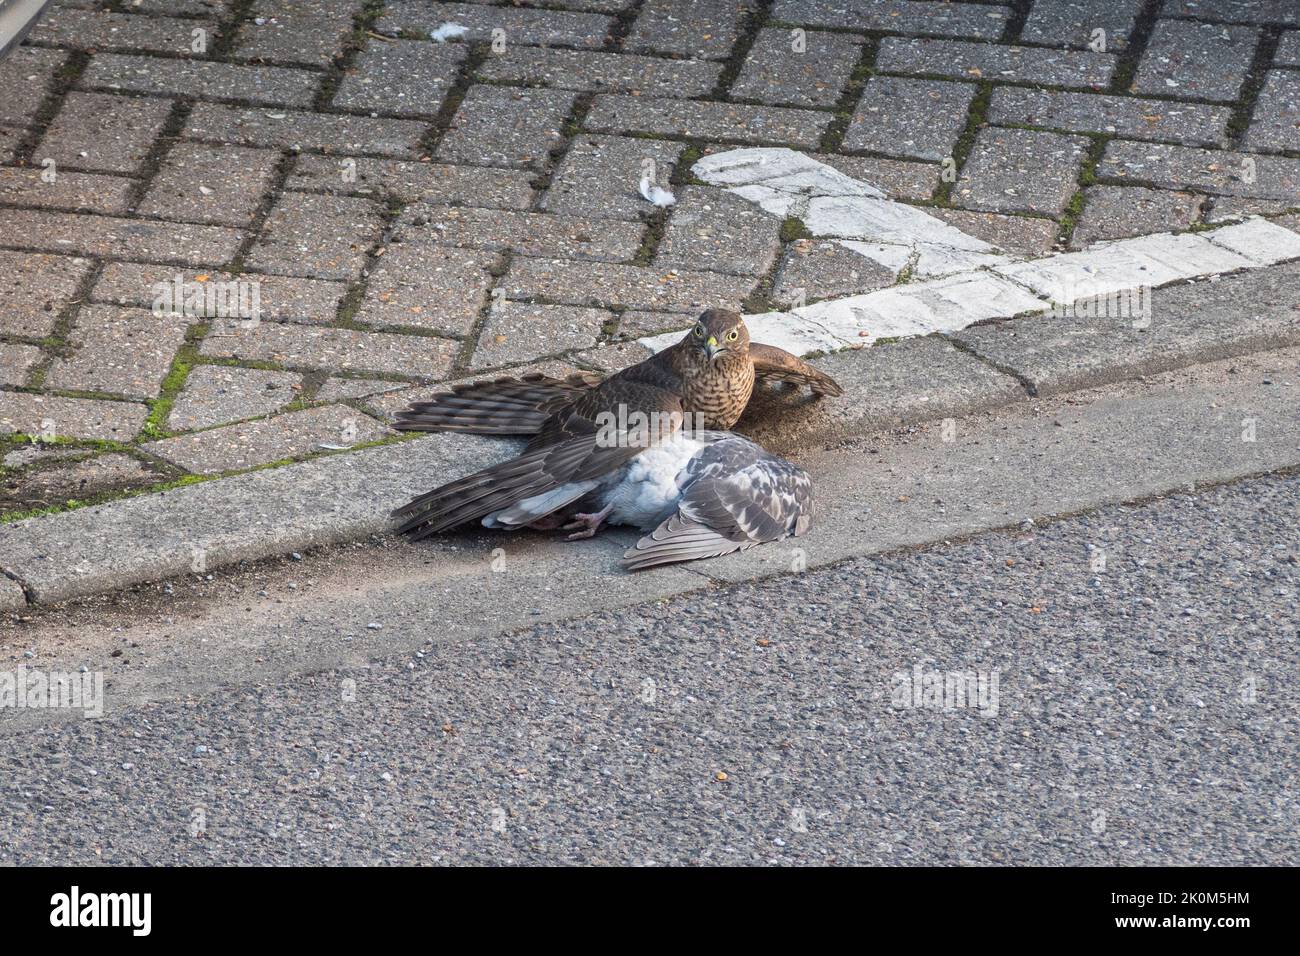 Nahaufnahme eines eurasischen Sparrowhawks (Accipiter nisus), der eine stil- alive Taube hält, bevor er sie in einer städtischen Umgebung, Großbritannien, tötet. Stockfoto